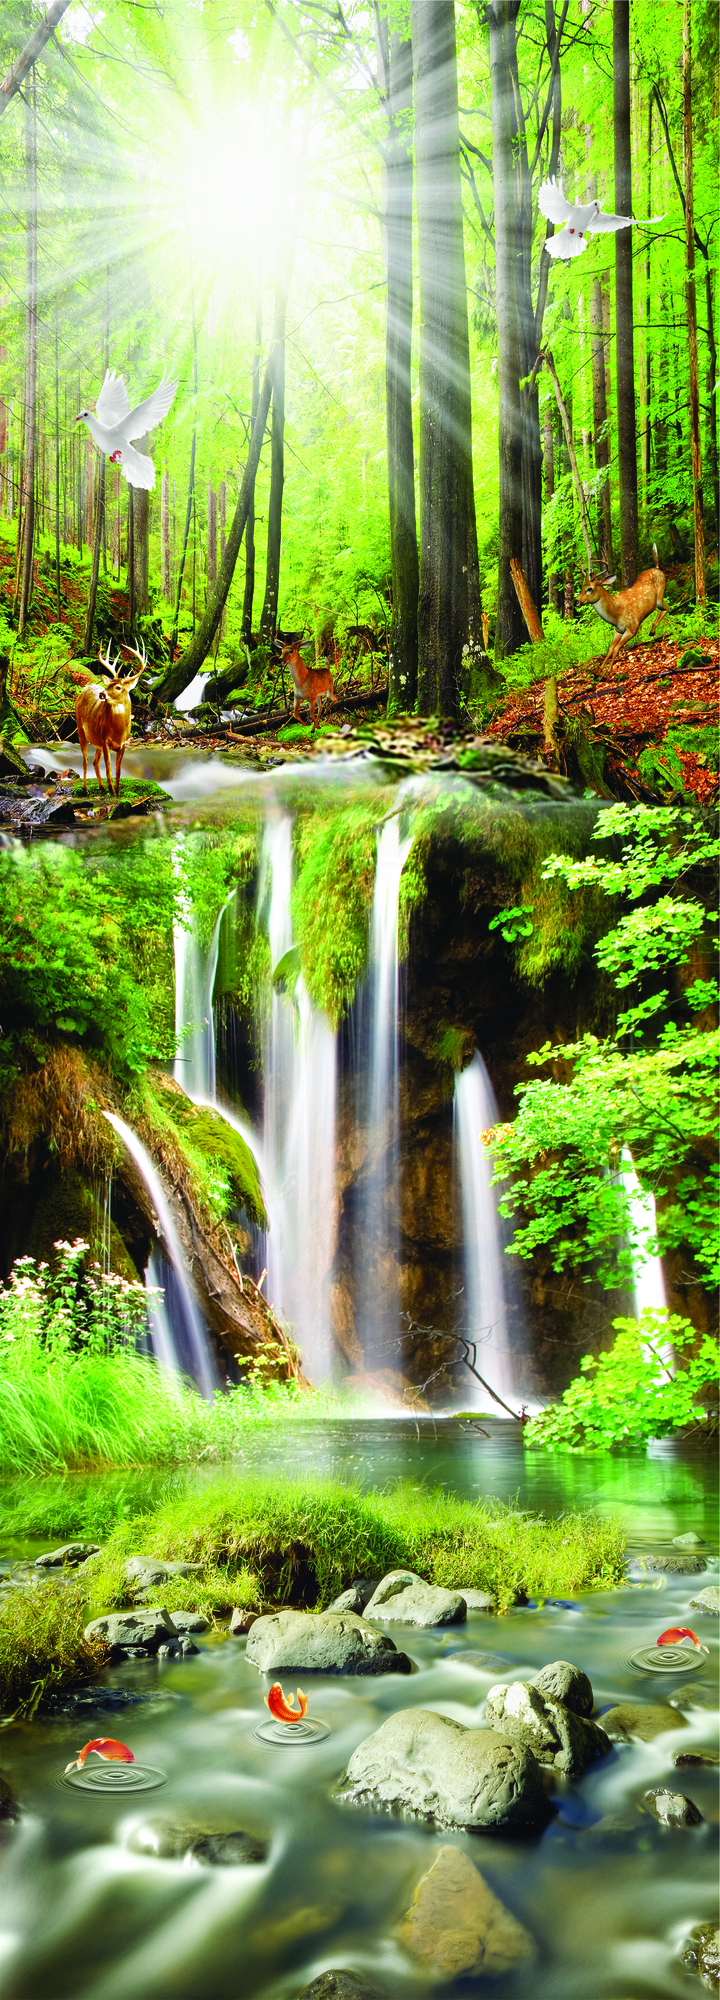 Tranh dọc rừng núi, thác nước hùng vĩ và muông thú chất lượng cao ...